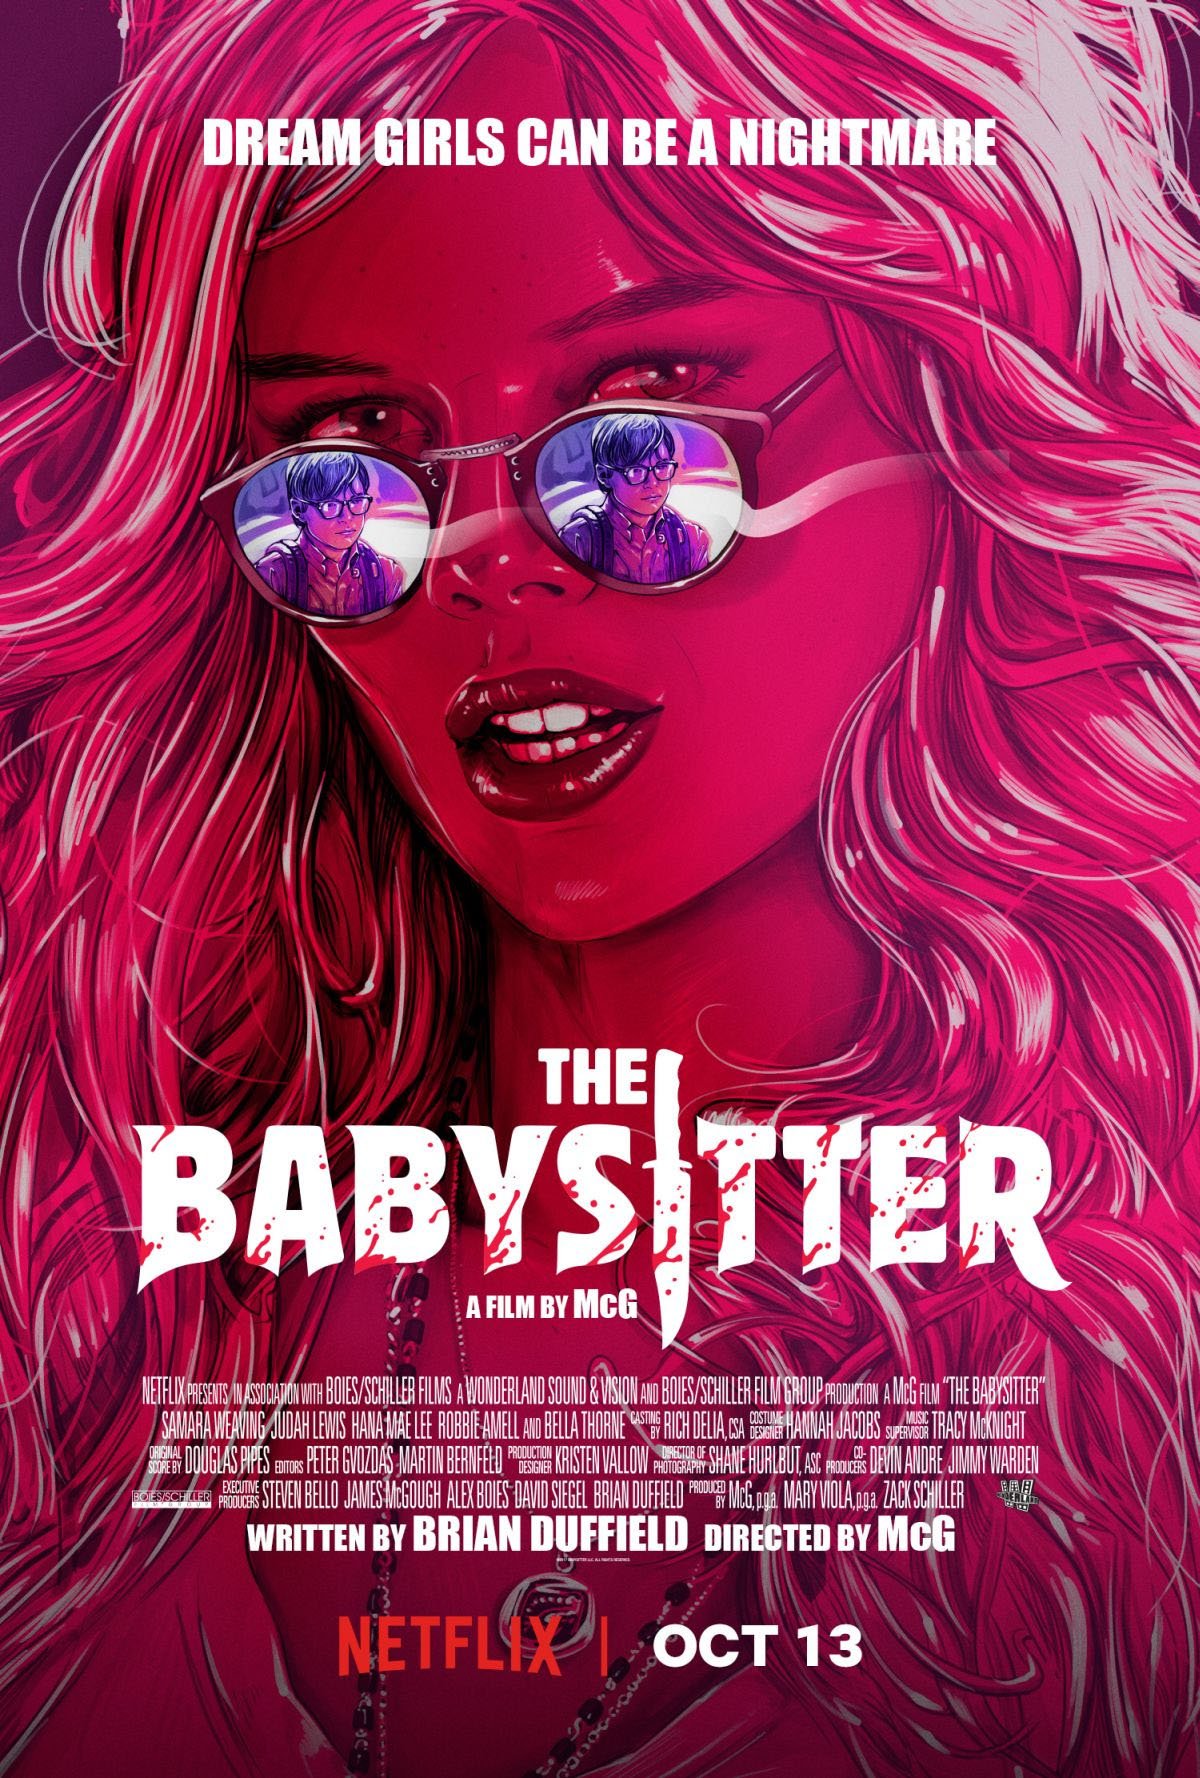 Cartel de The Babysitter - Poster 1 - SensaCine.com